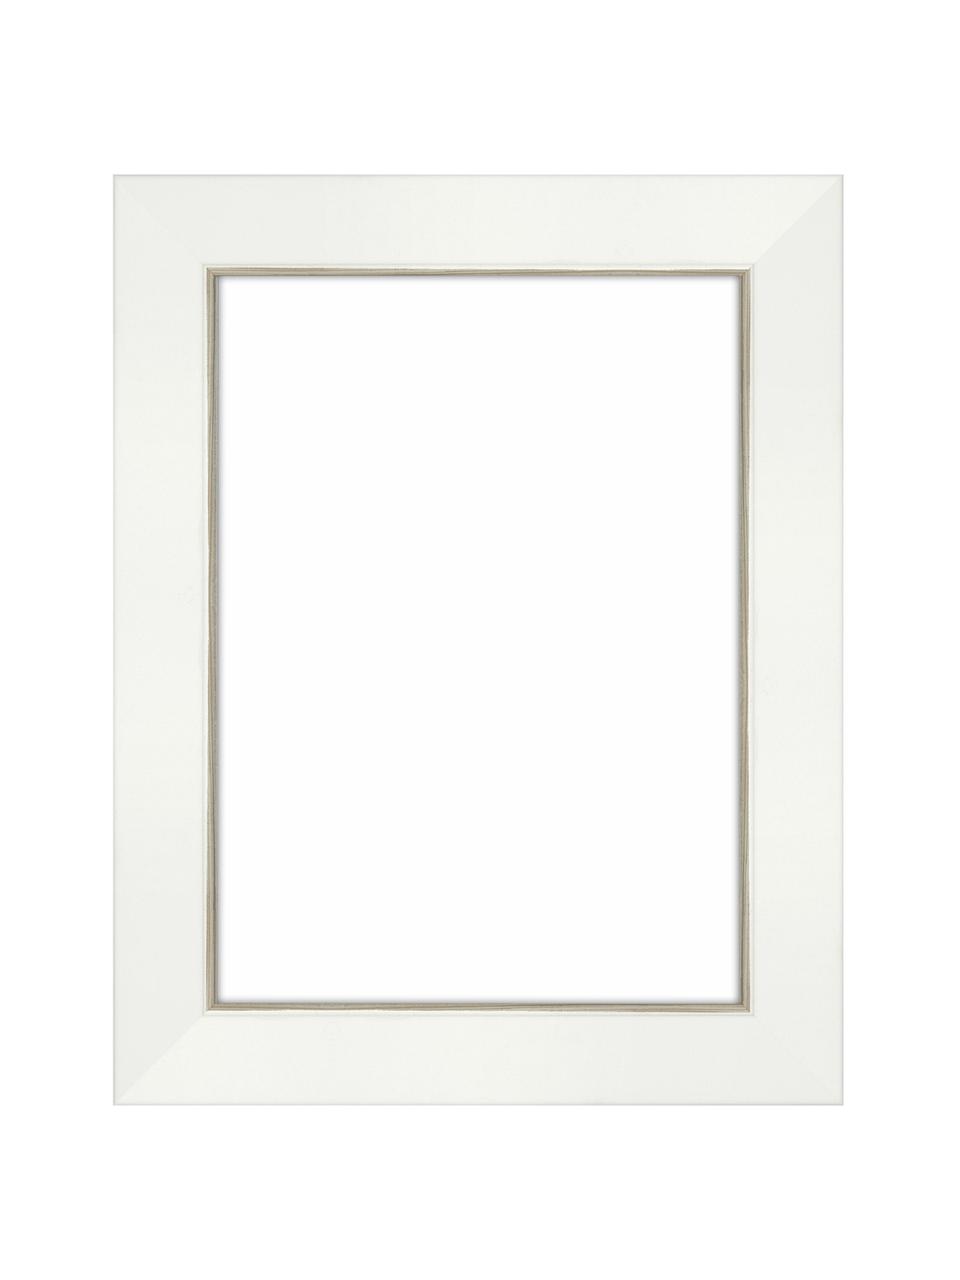 Marco Classico, Parte trasera: tablero de fibras de dens, Blanco, 13 x 18 cm